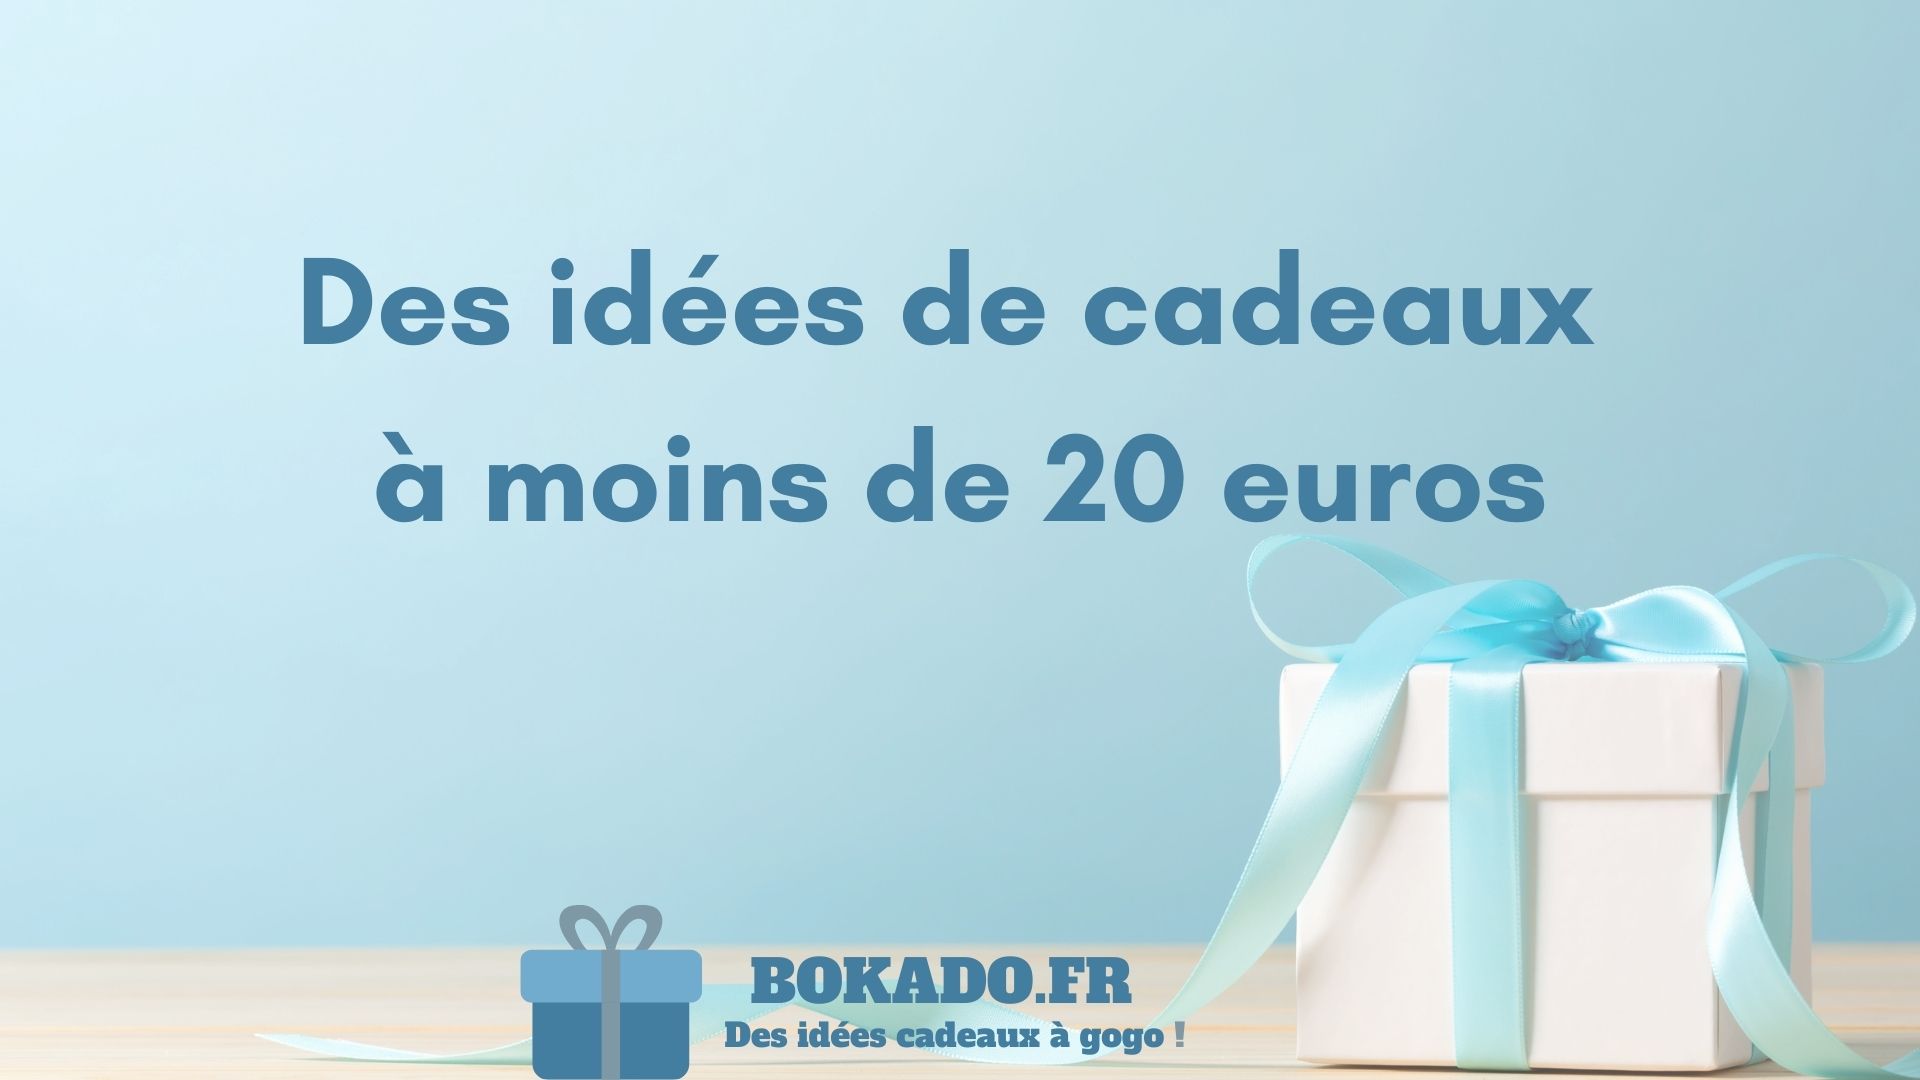 Idées cadeaux made in France (budget de moins de 20€) - Marques de